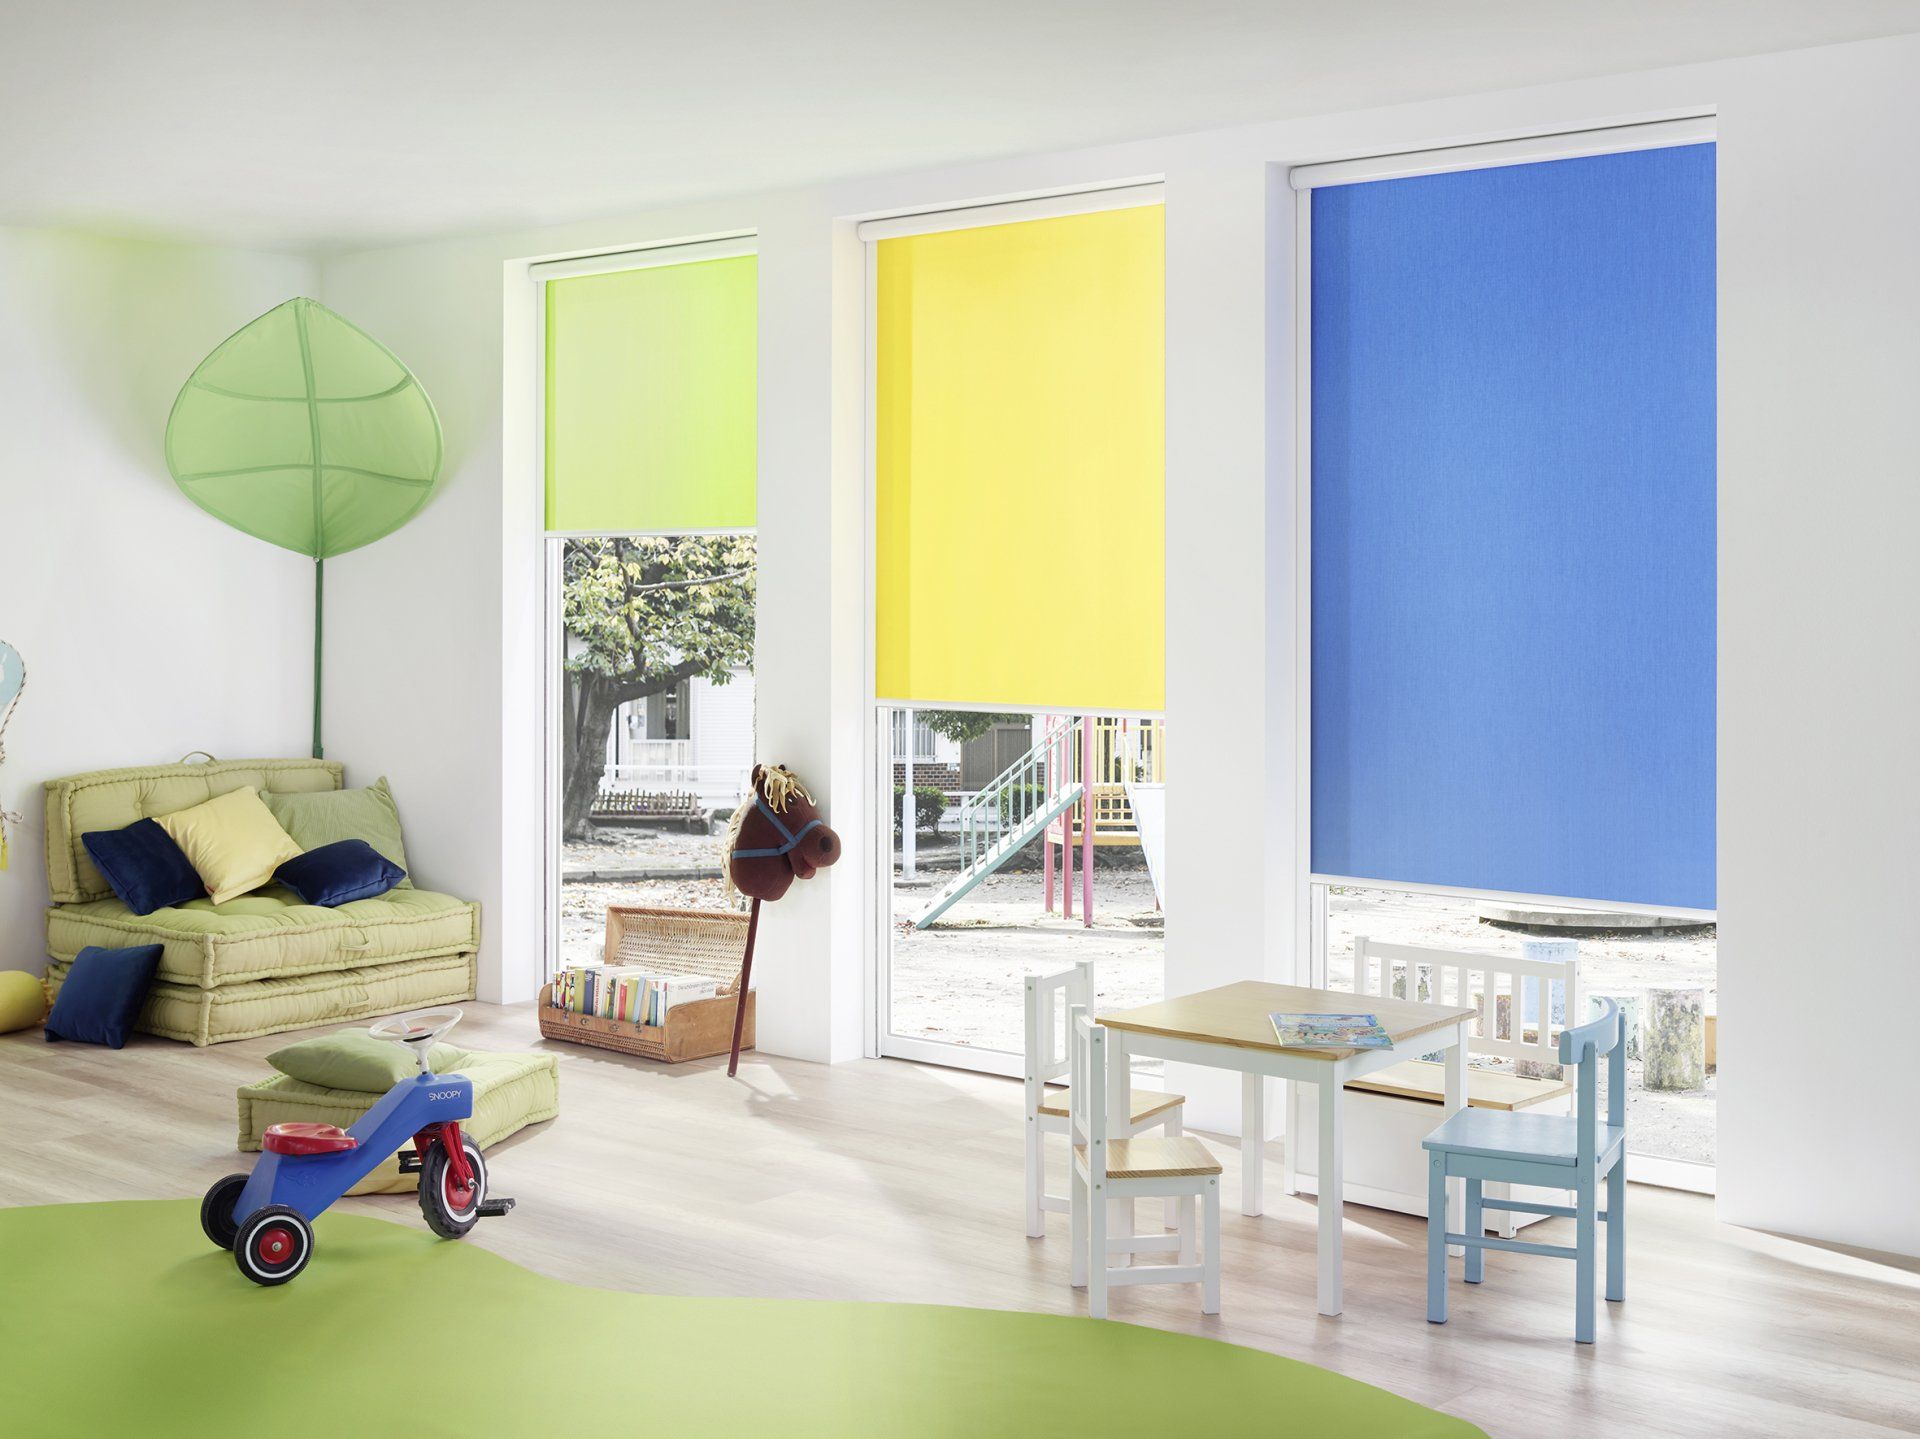 Kinderzimmer mit grünem Teppich und Miniaturtisch und bunten Fensterrollos in blau, gelb und grün